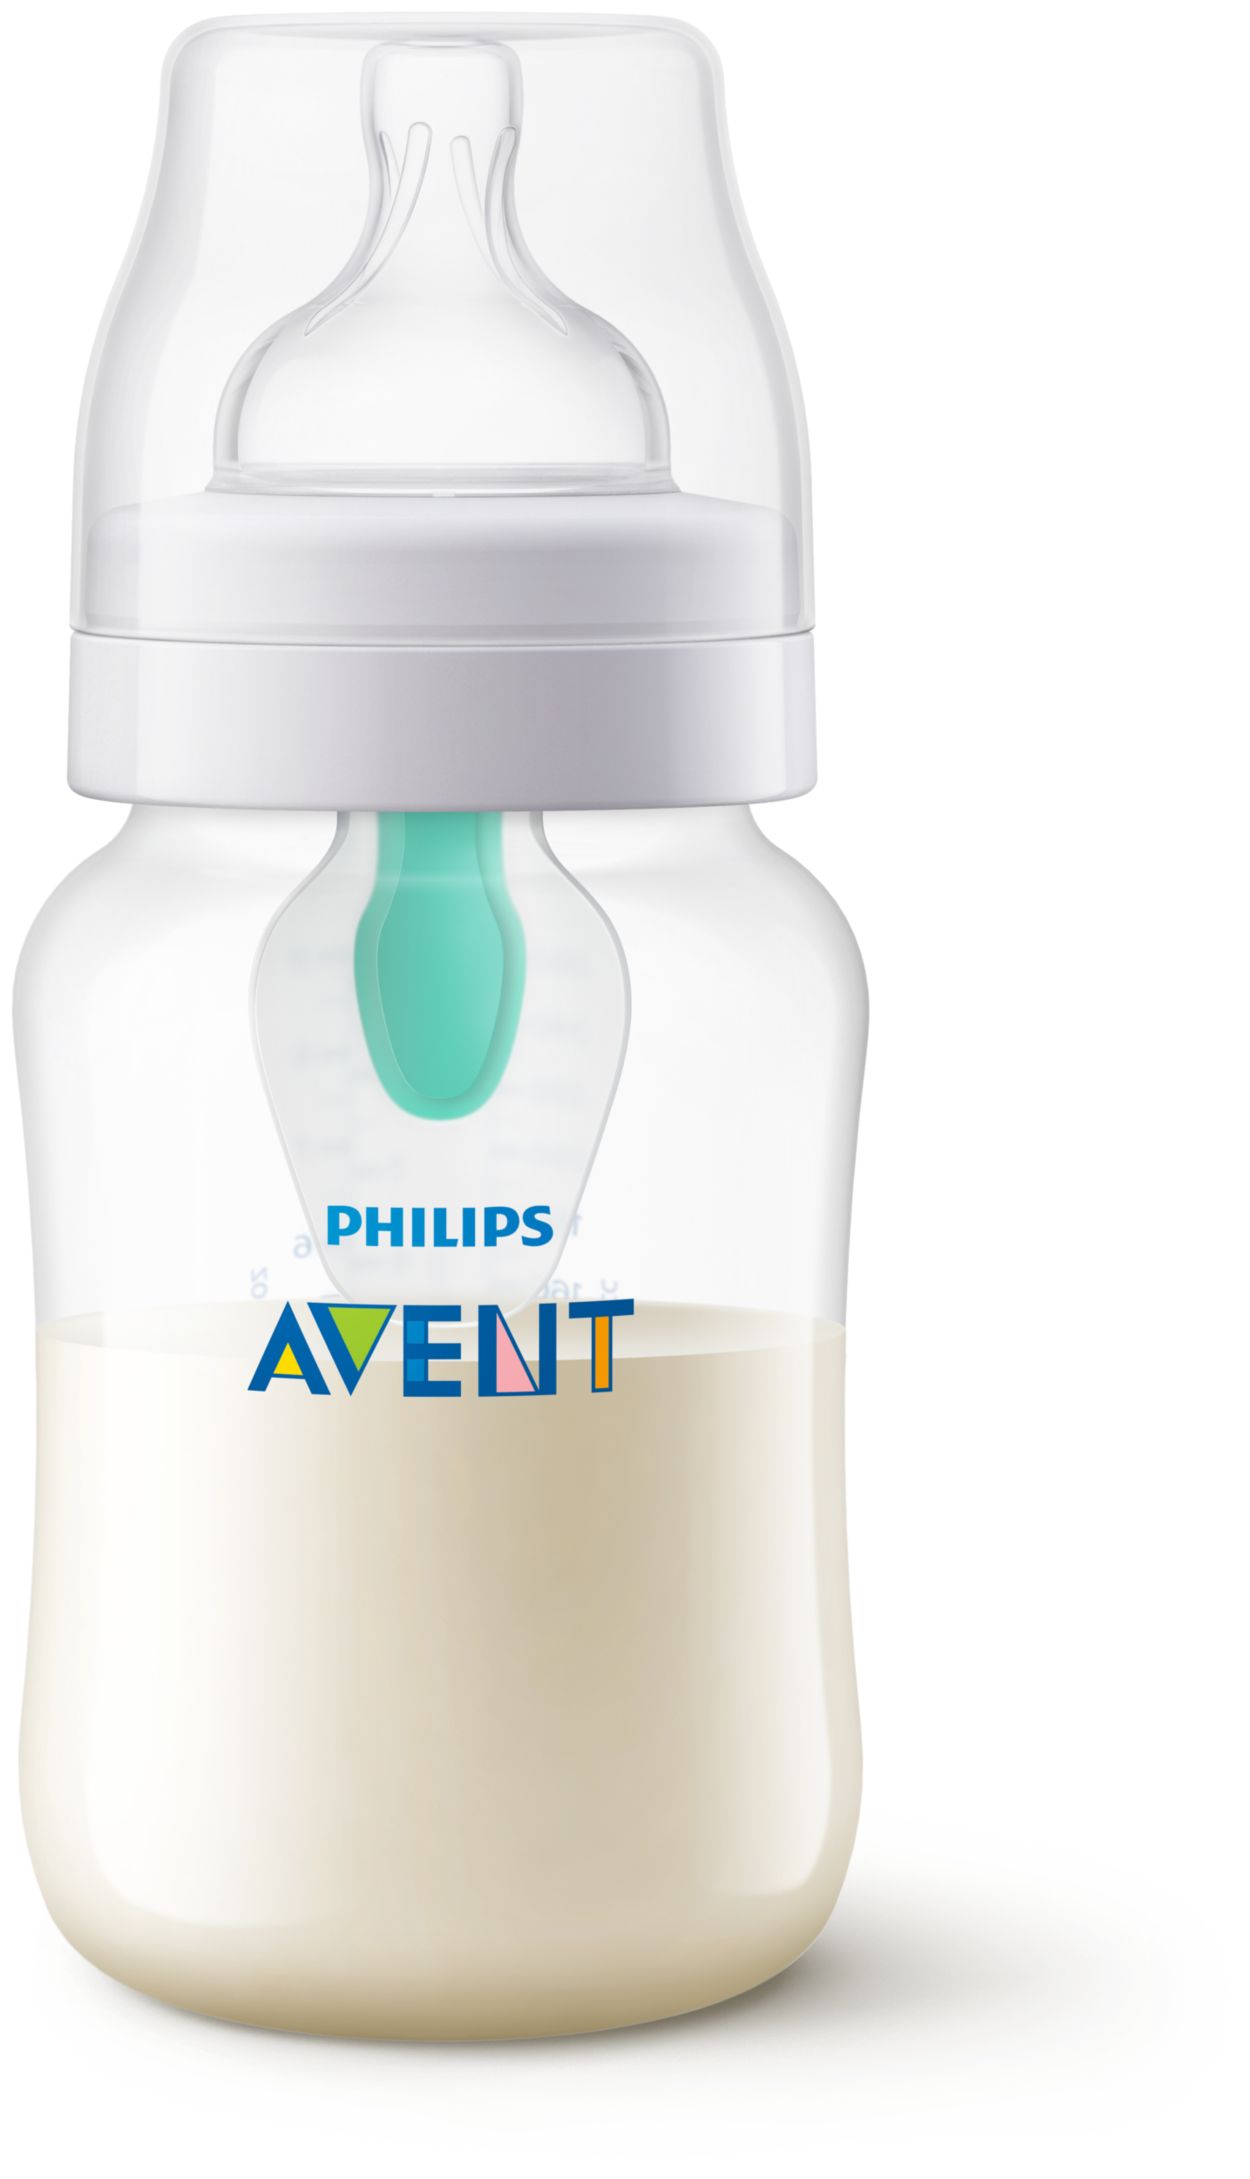  Philips AVENT - Biberón anticólicos con ventilación AirFree,  266 mililitros, transparente, SCY703/04, 4 unidades : Bebés